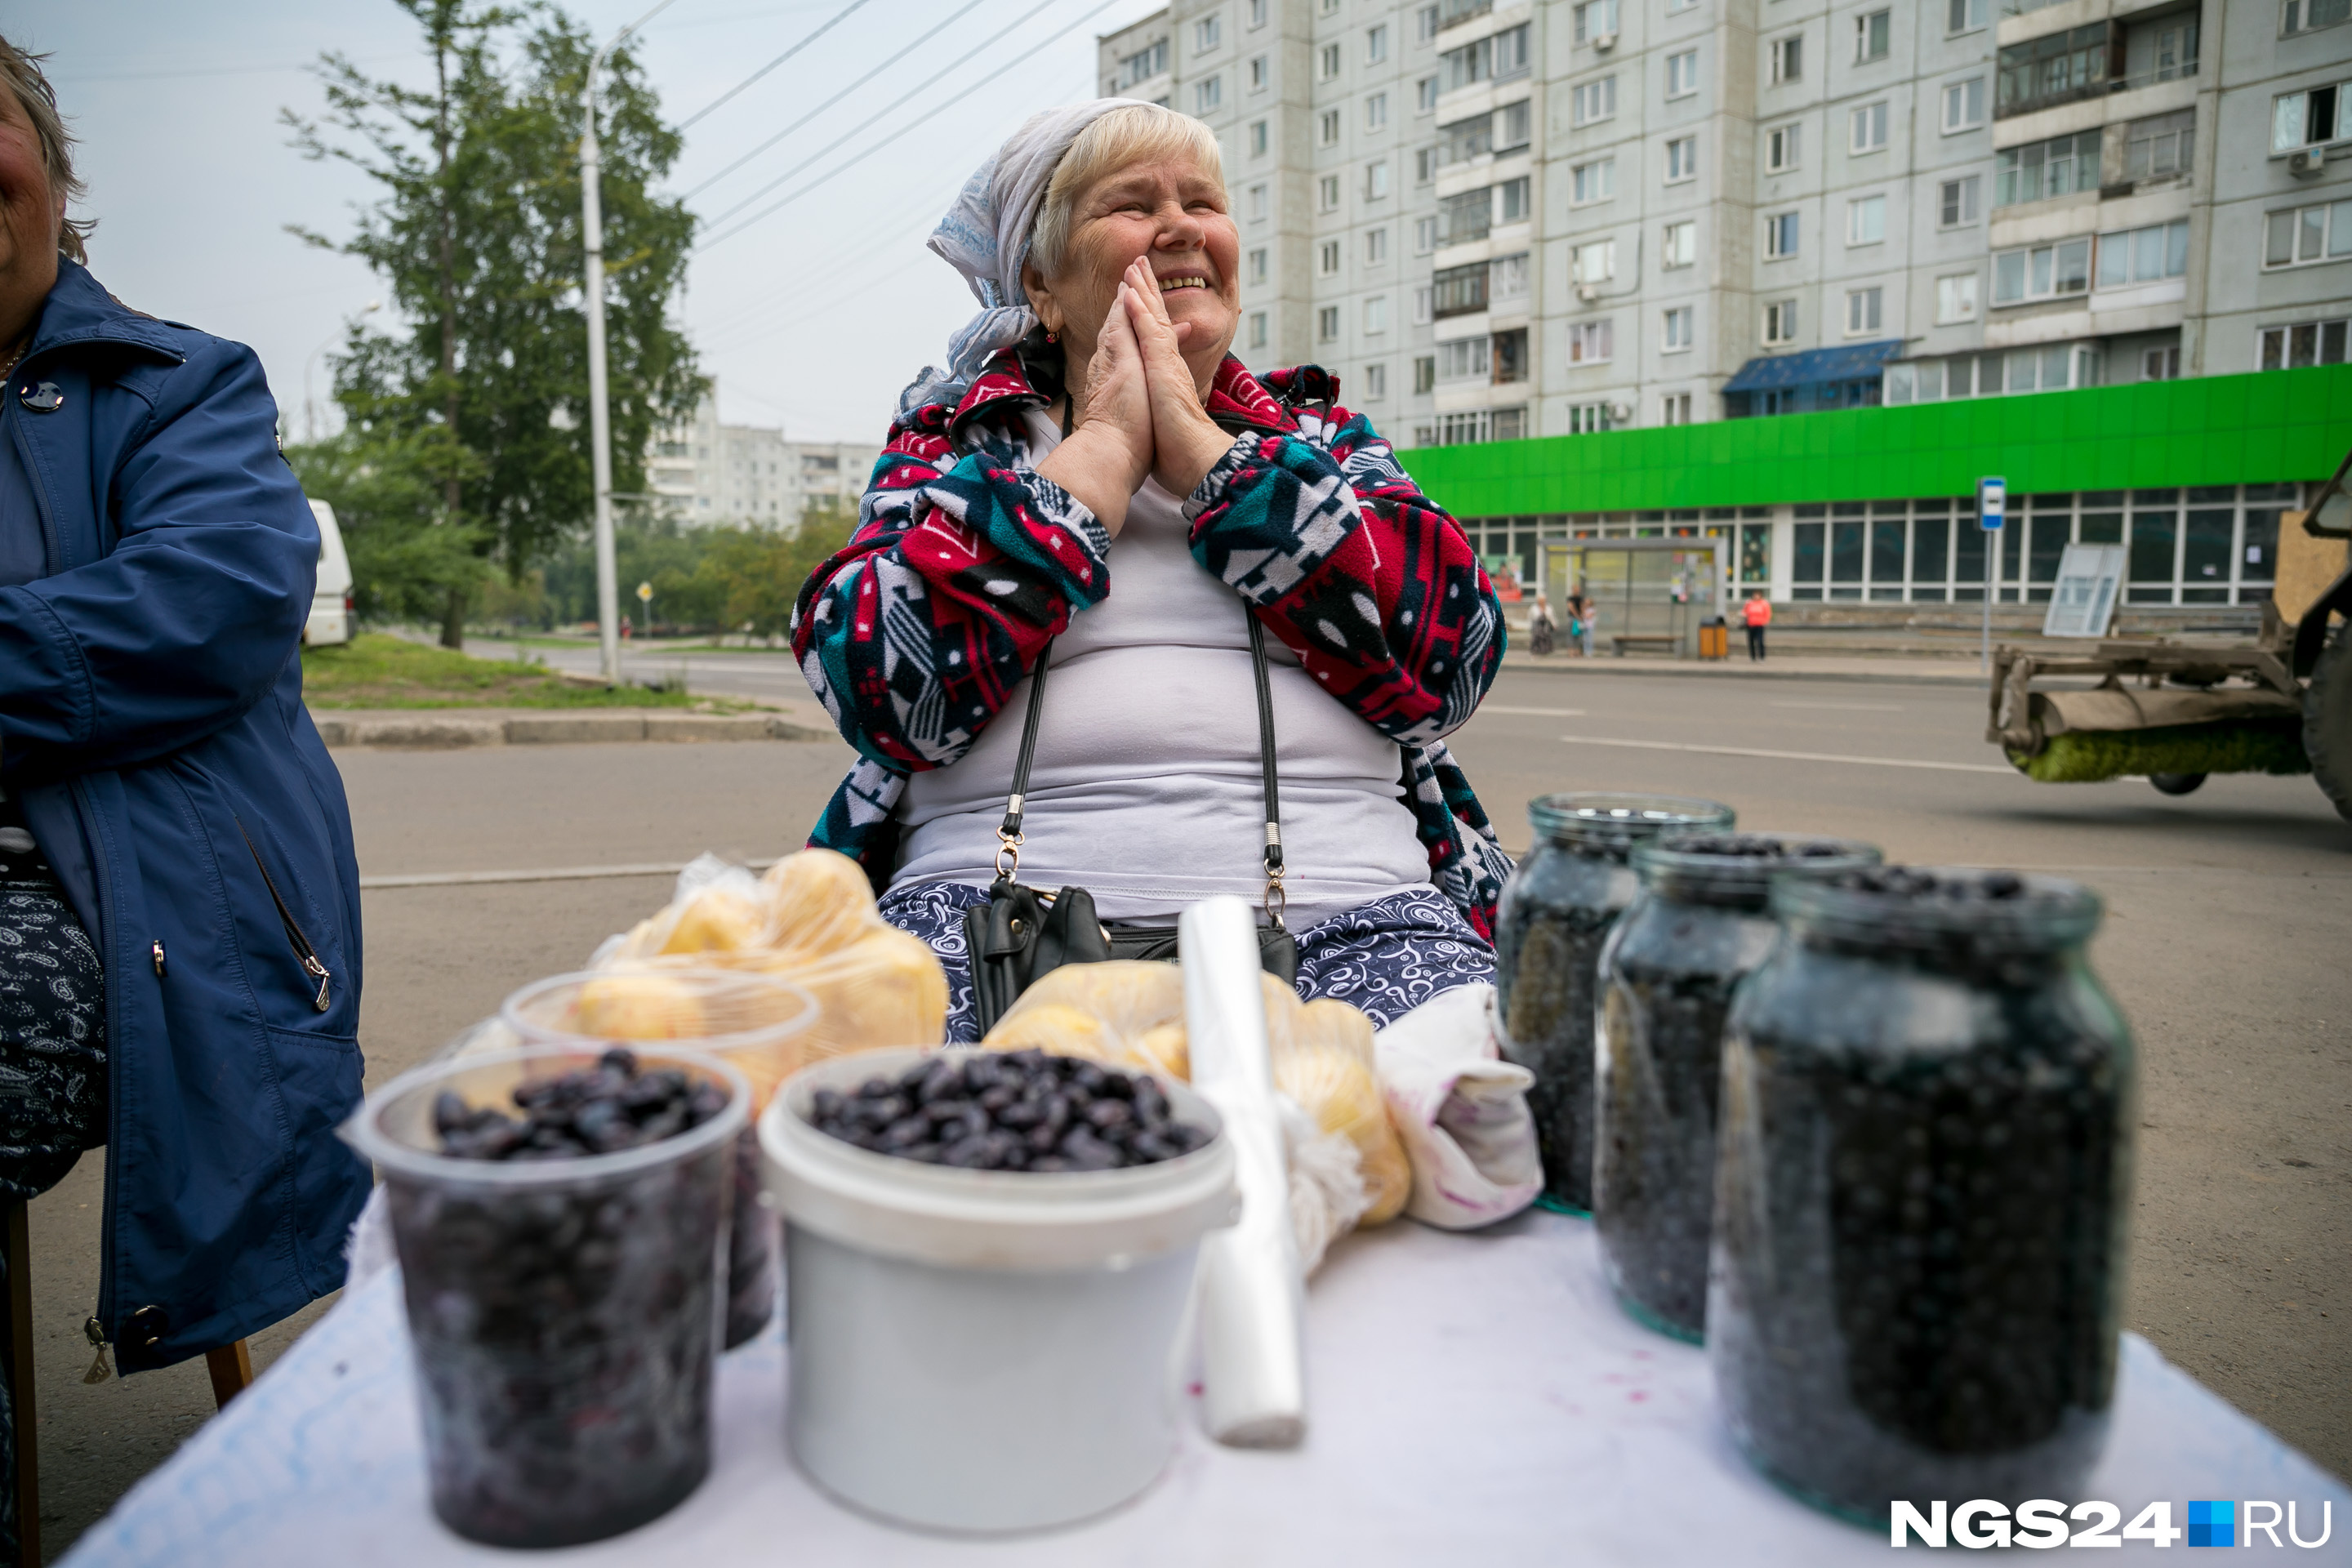 В продаже у бабушки — жимолость, черника и молодая картошка. Все — от 100 до 200 рублей